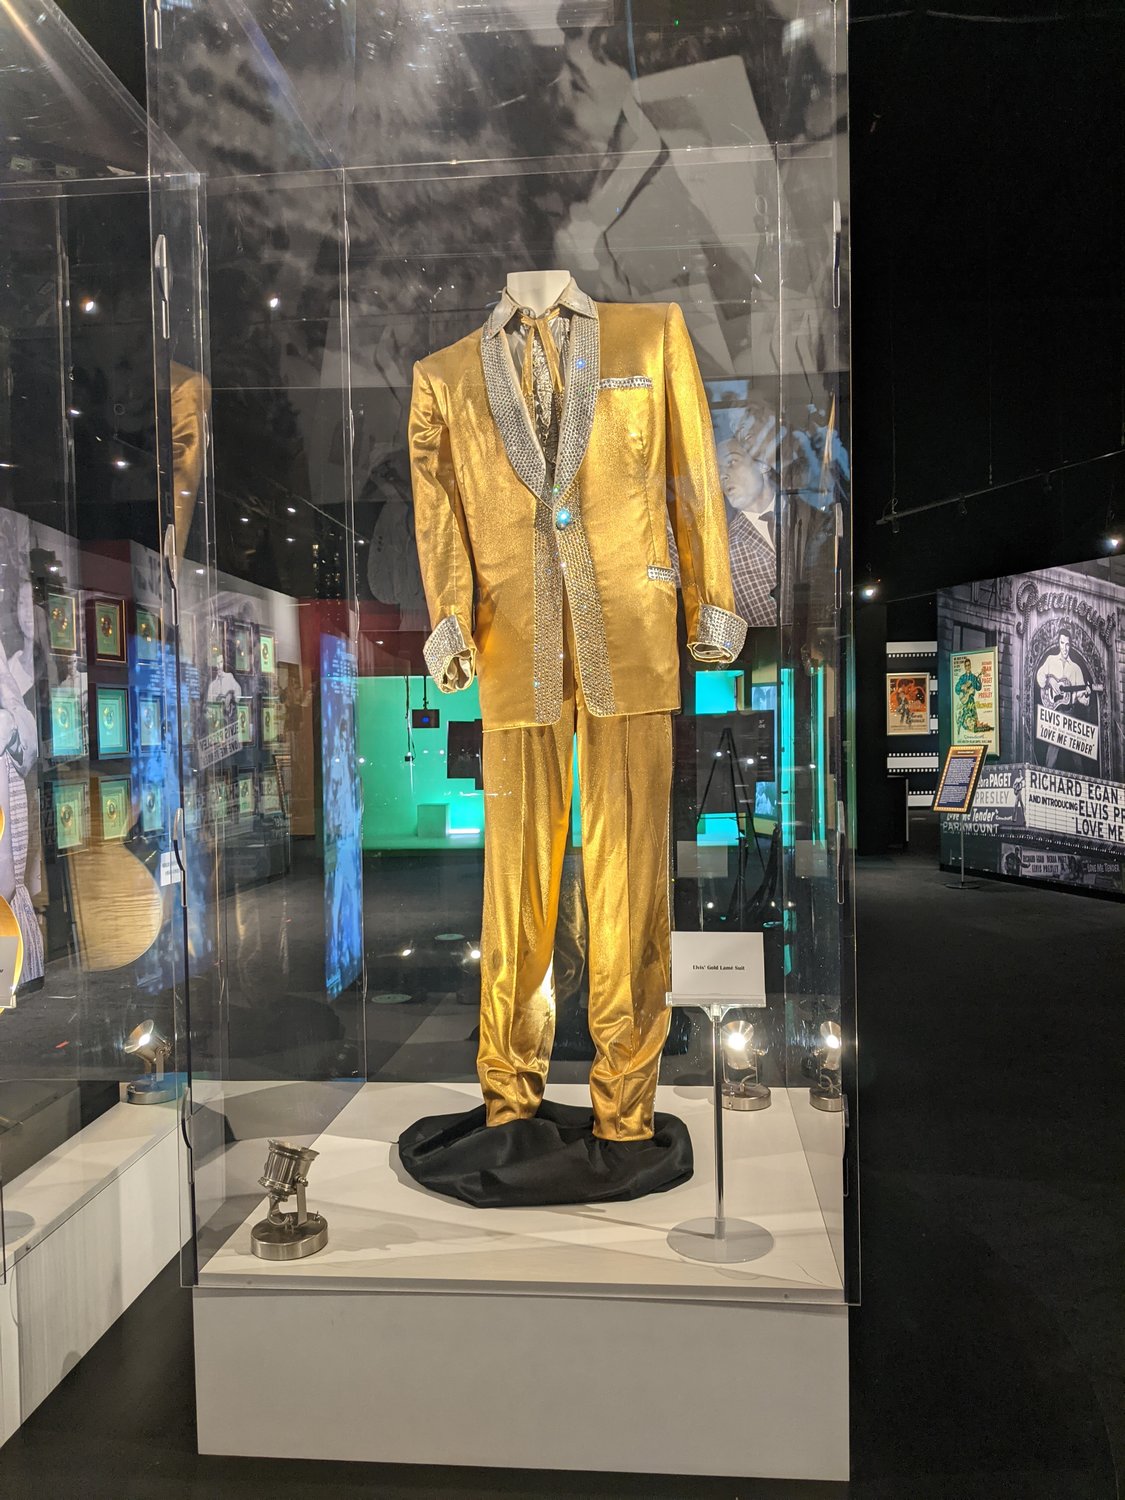 Elvis's gold lame suit